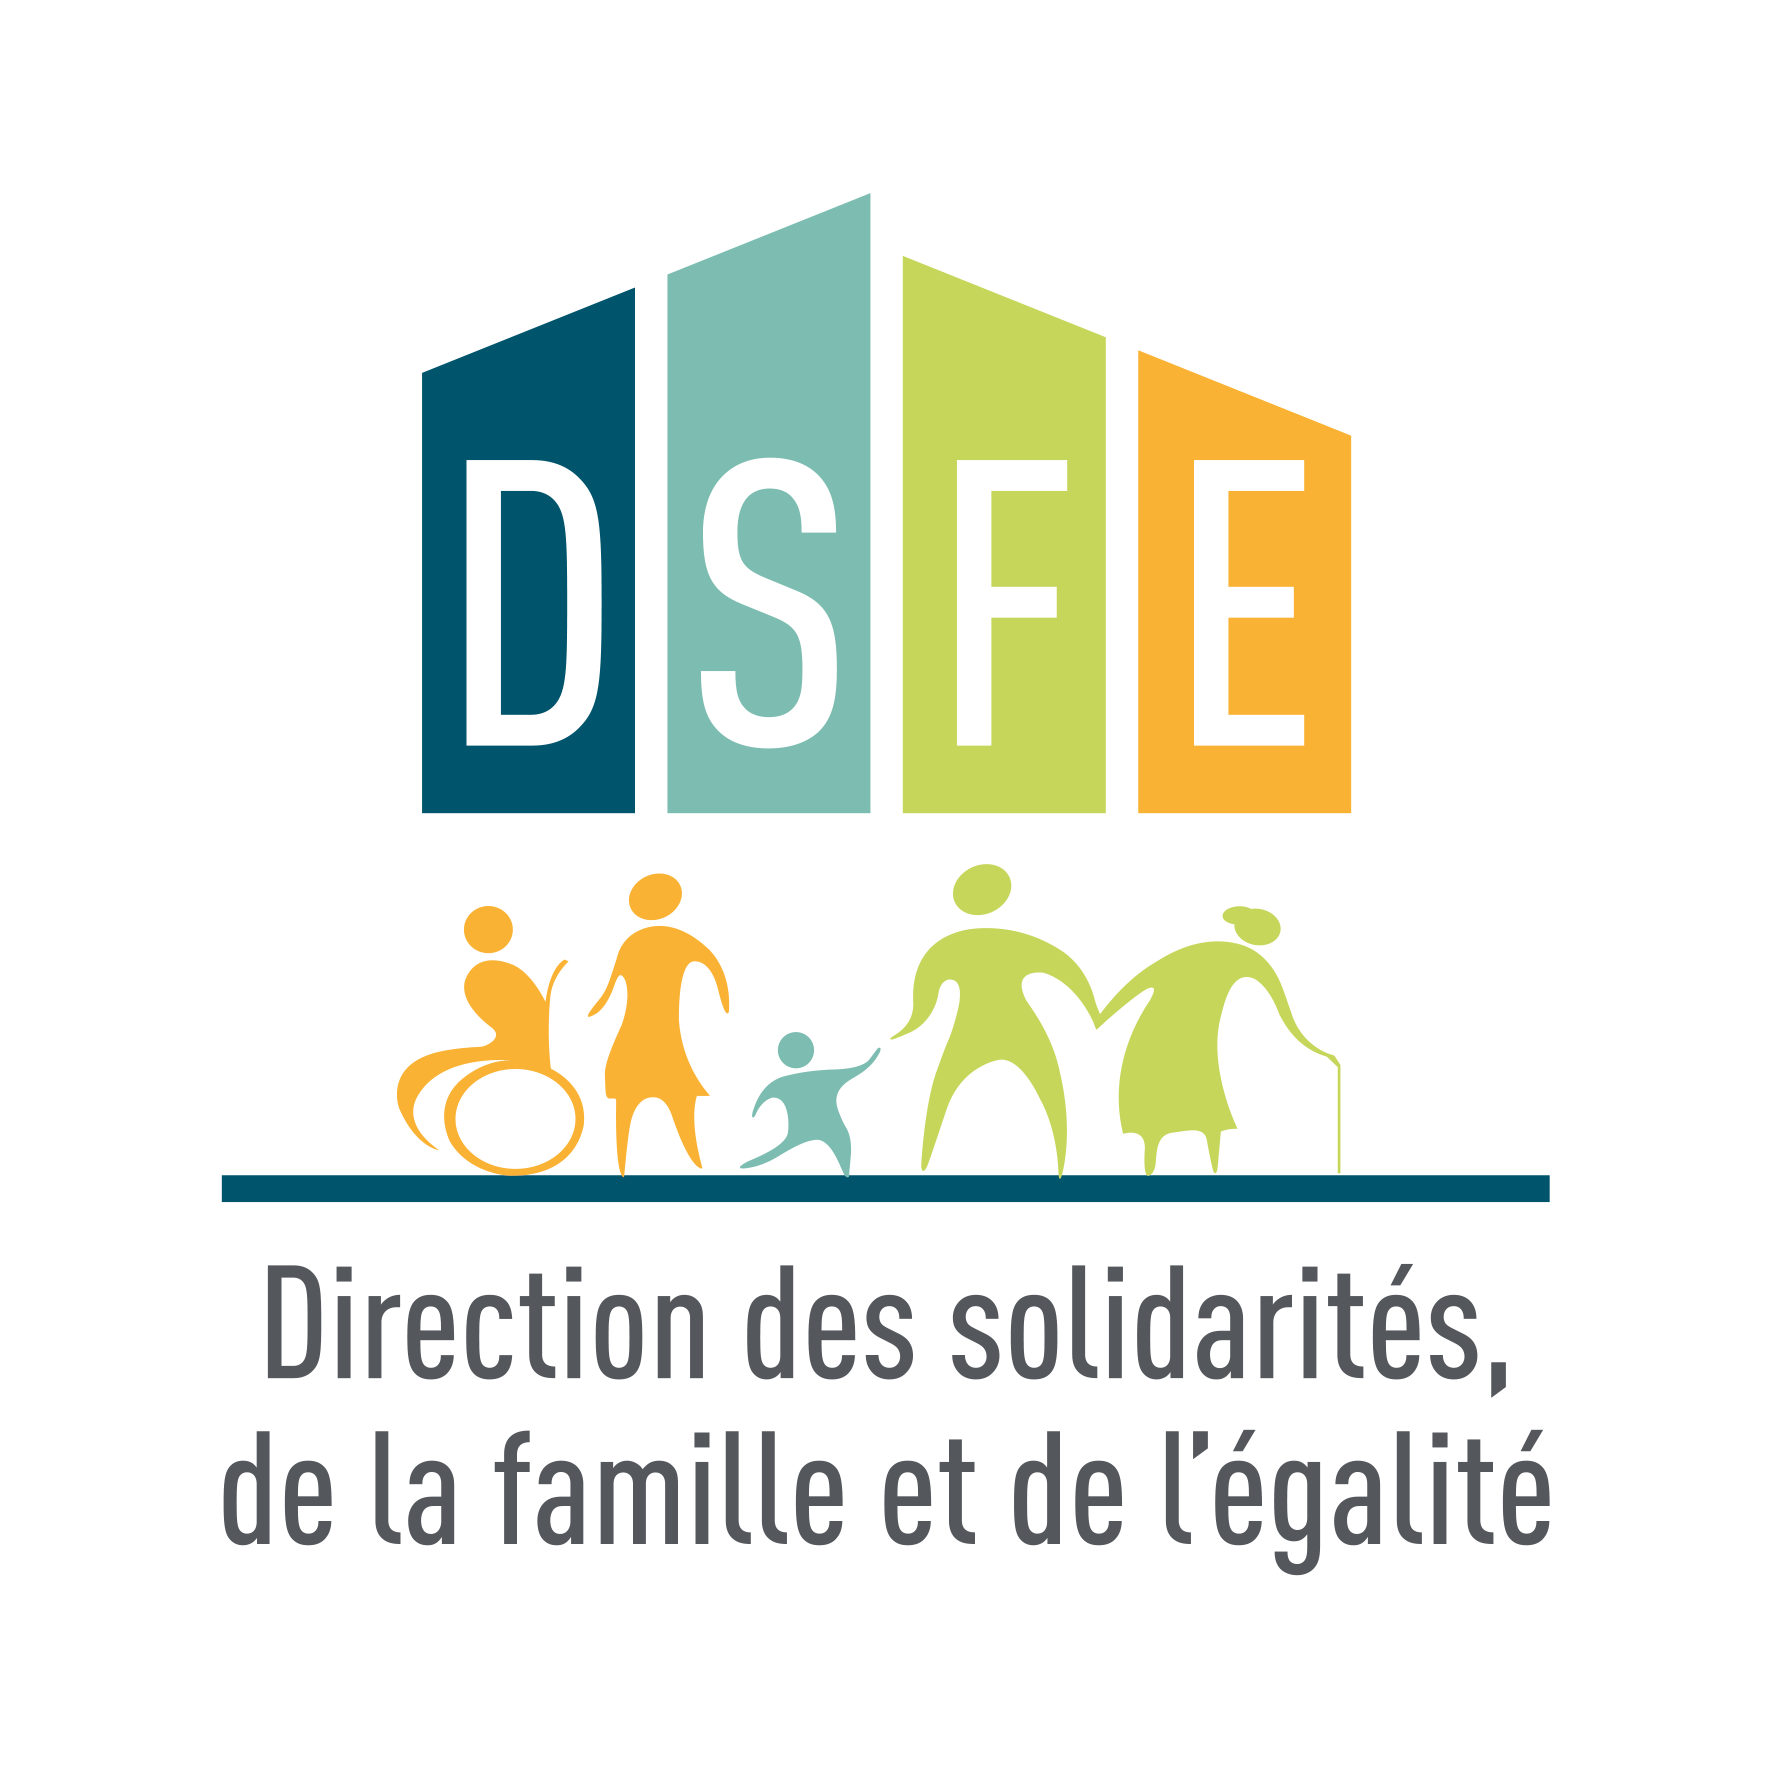 DSFE Direction des Solidarités, de la Famille et de l'Egalité